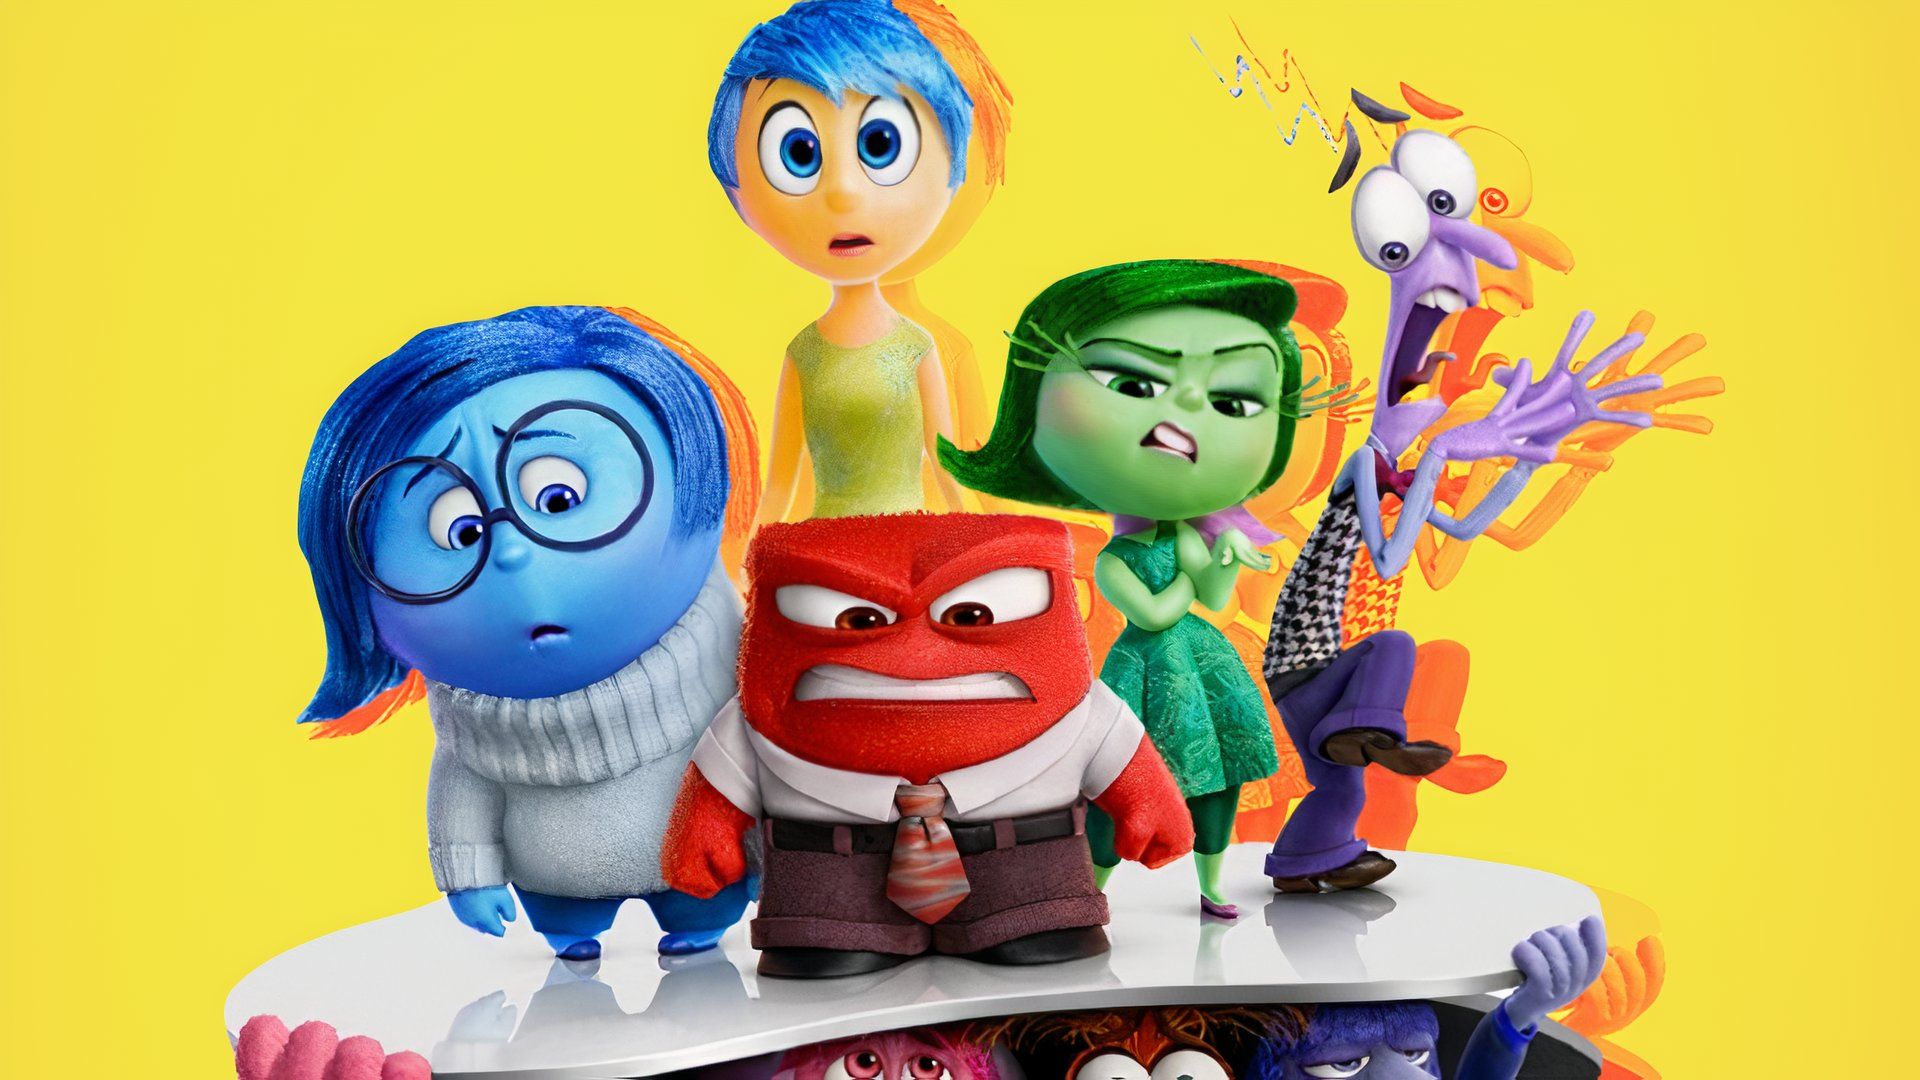 Наизнанку 2 Прибыли первые реакции; Сделает ли нас продолжение Pixar счастливыми, грустными или злыми?